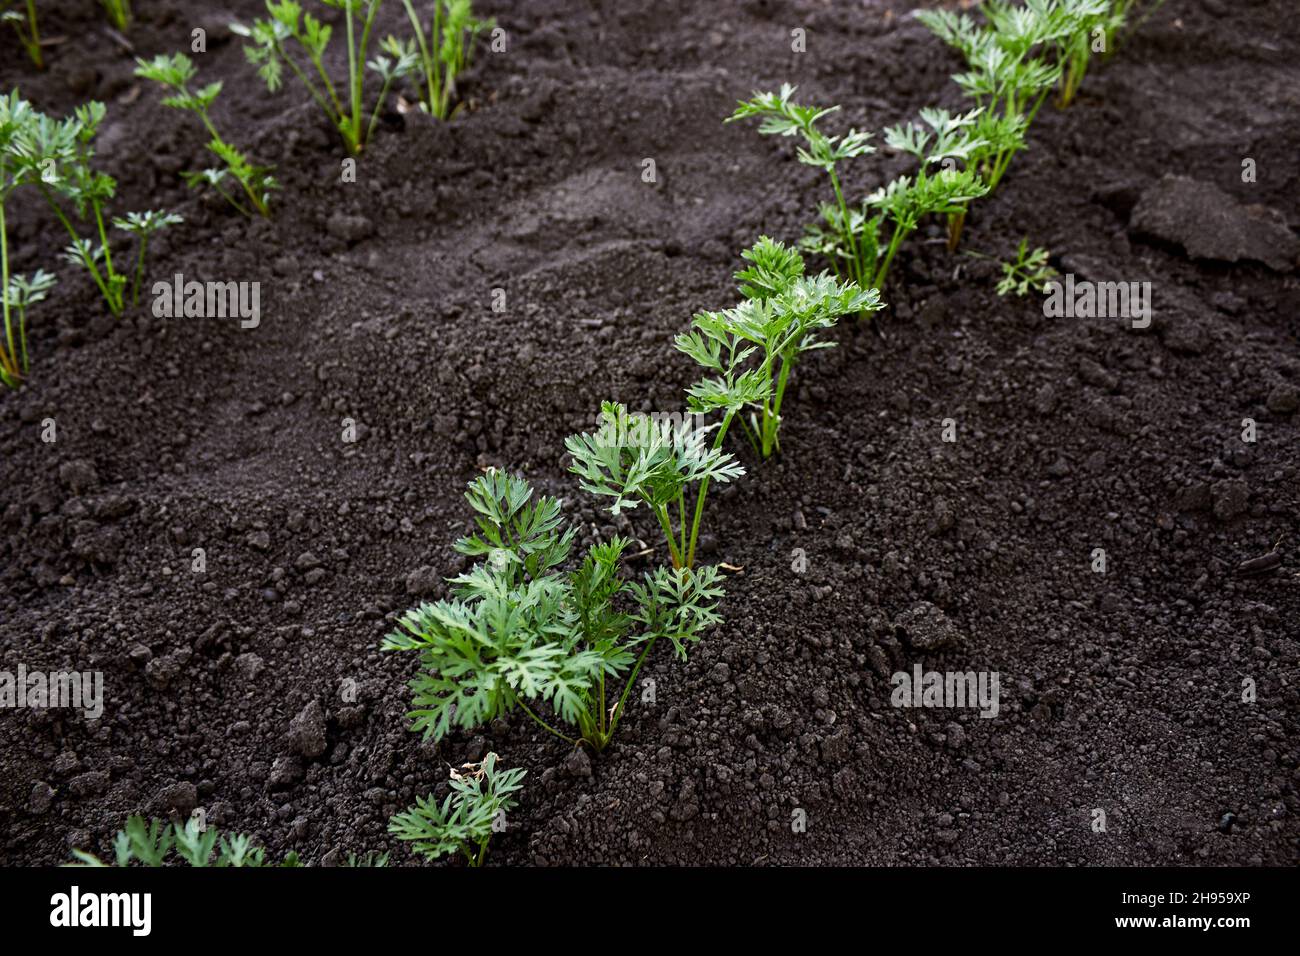 Karotten-Sämlinge werden in einer Reihe gepflanzt. Betten von wachsenden jungen Karotten. Karotten-Setzlinge auf dem Bauernhof. Karottenoberteile. Das Thema Gartenarbeit, Landwirtschaft. Stockfoto